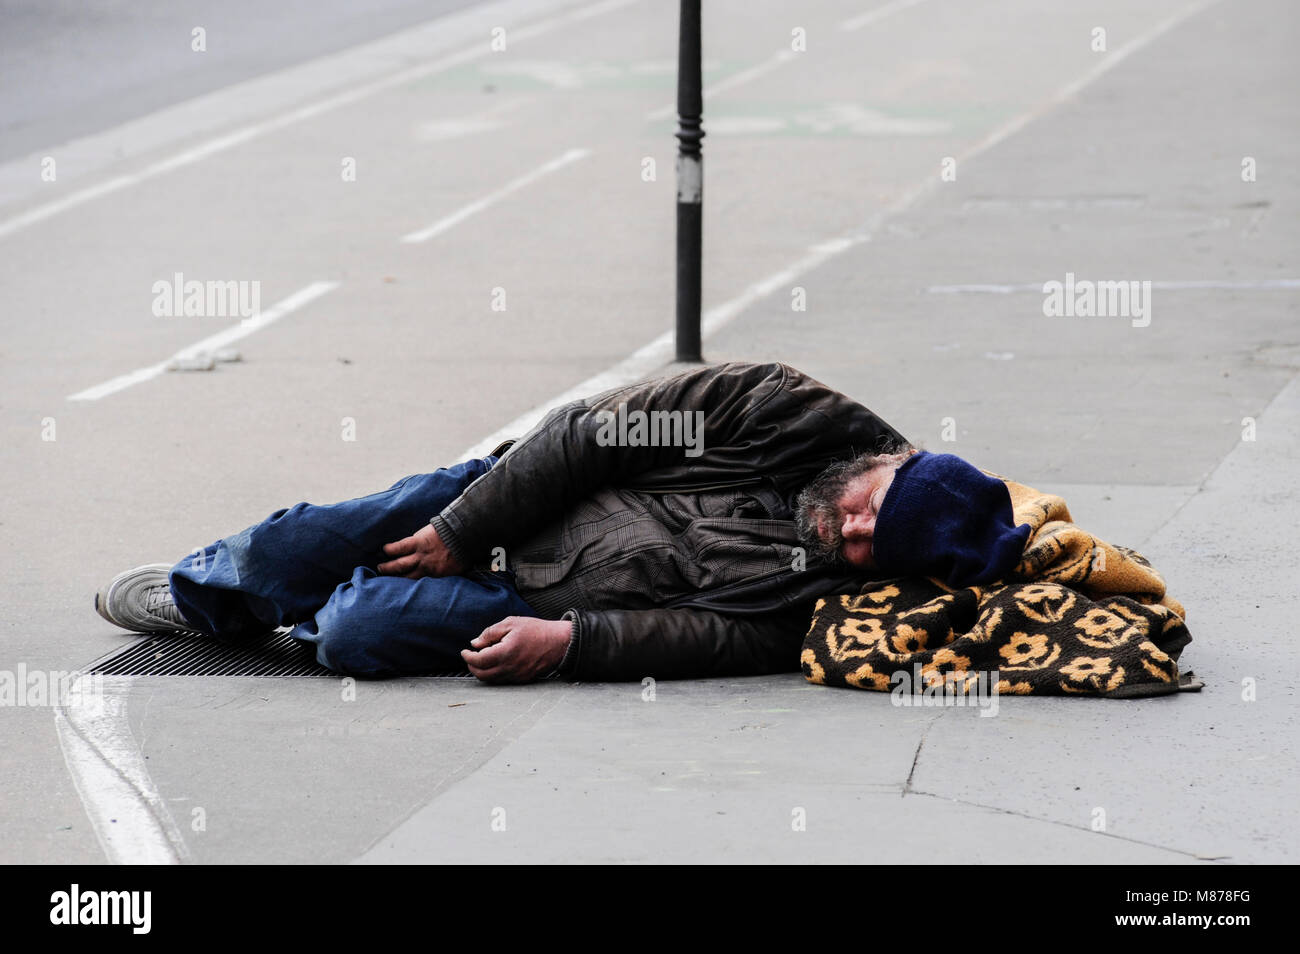 PARIS FRANKREICH - OBDACHLOSEN AUF DER STRASSE ZU SCHLAFEN - PARIS - PARIS WINTER OBDACHLOSEN-SANS ABRI RUHENDEN dans la rue EN PLEIN JOUR © F. BEAUMONT Stockfoto